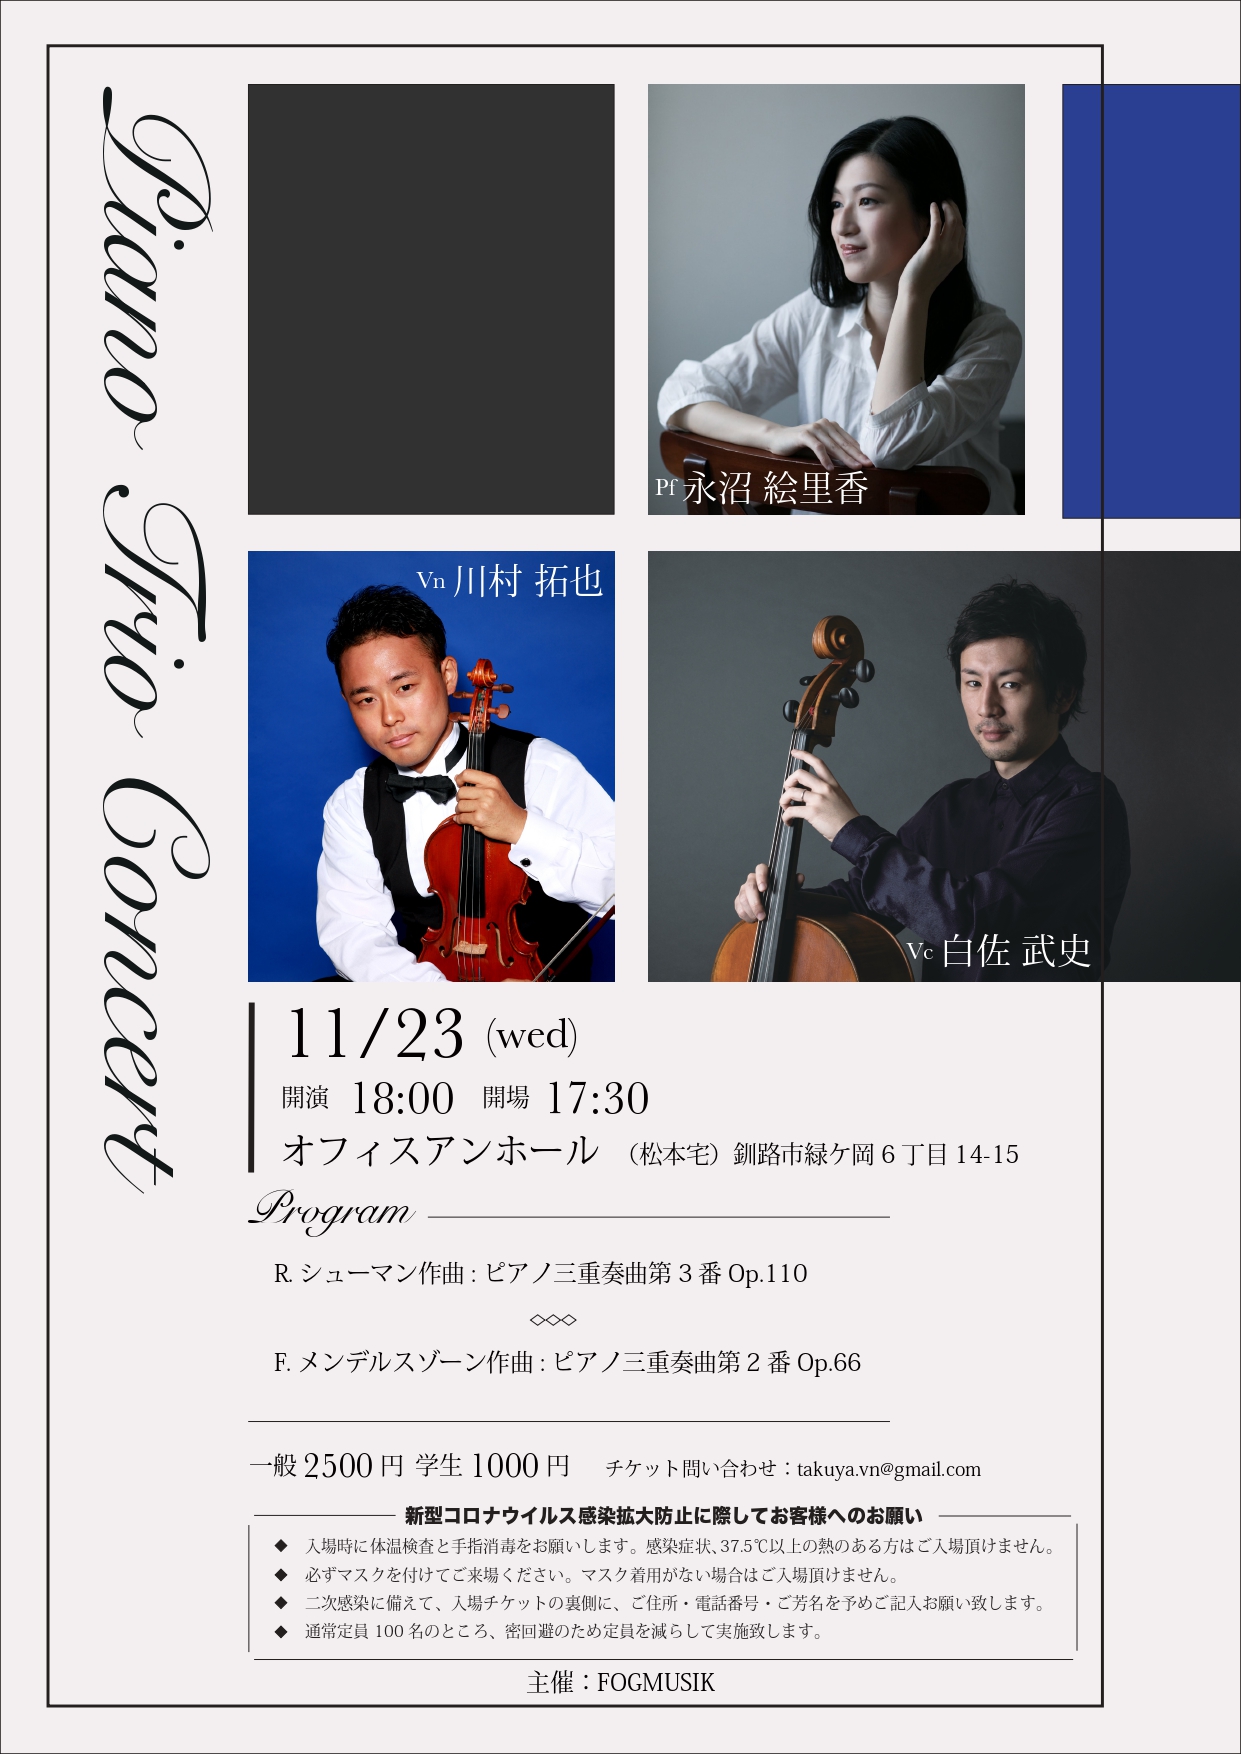 ピアノトリオコンサート 釧路公演